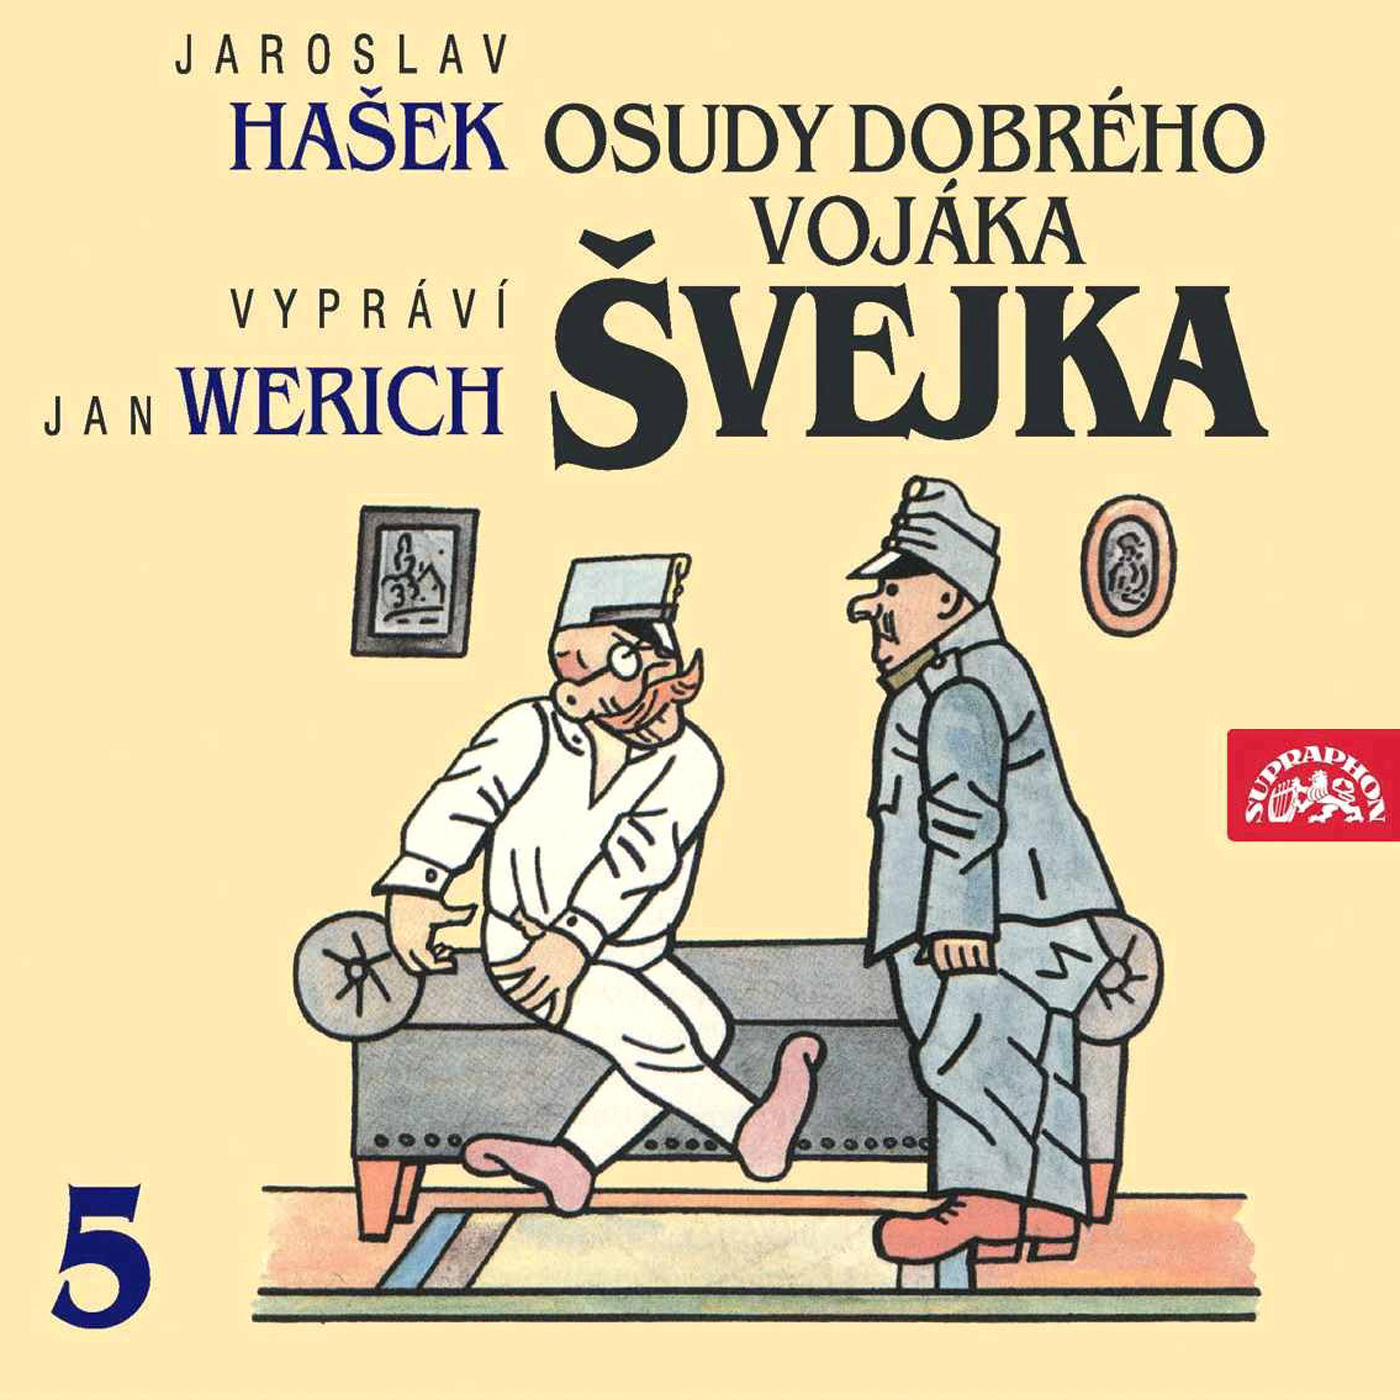 CD Shop - WERICH JAN OSUDY DOBREHO VOJAKA SVEJKA 5 (JAROSLAV HASEK)